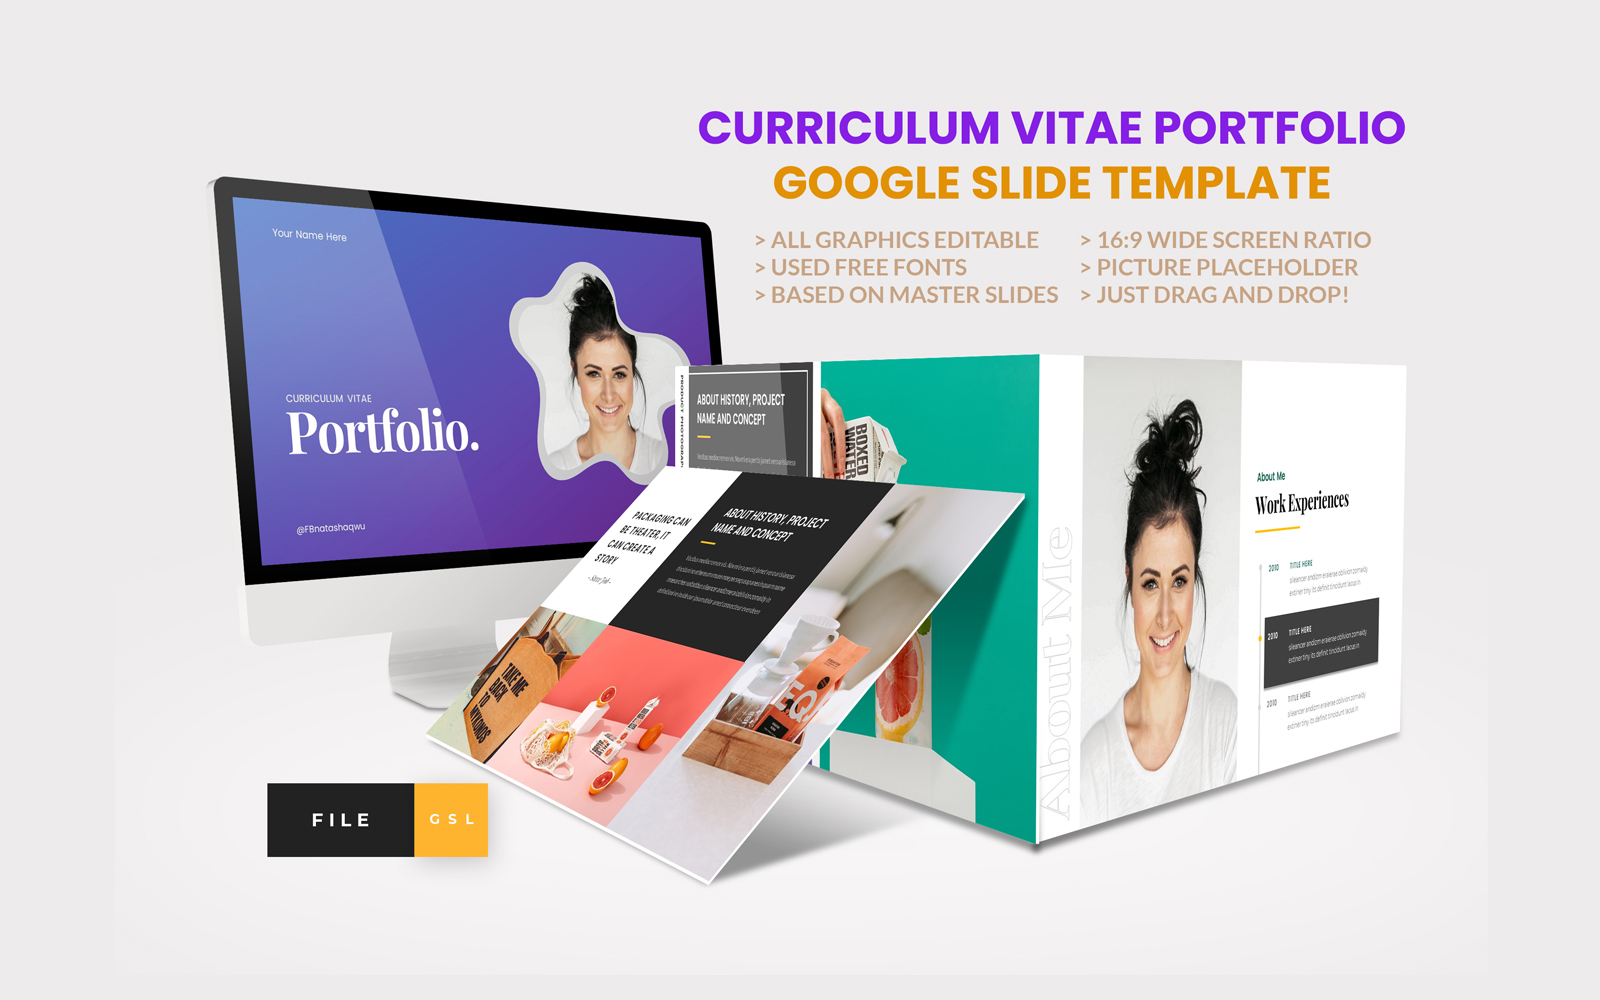 Curriculum Vitae Portfolio Google Slide Template